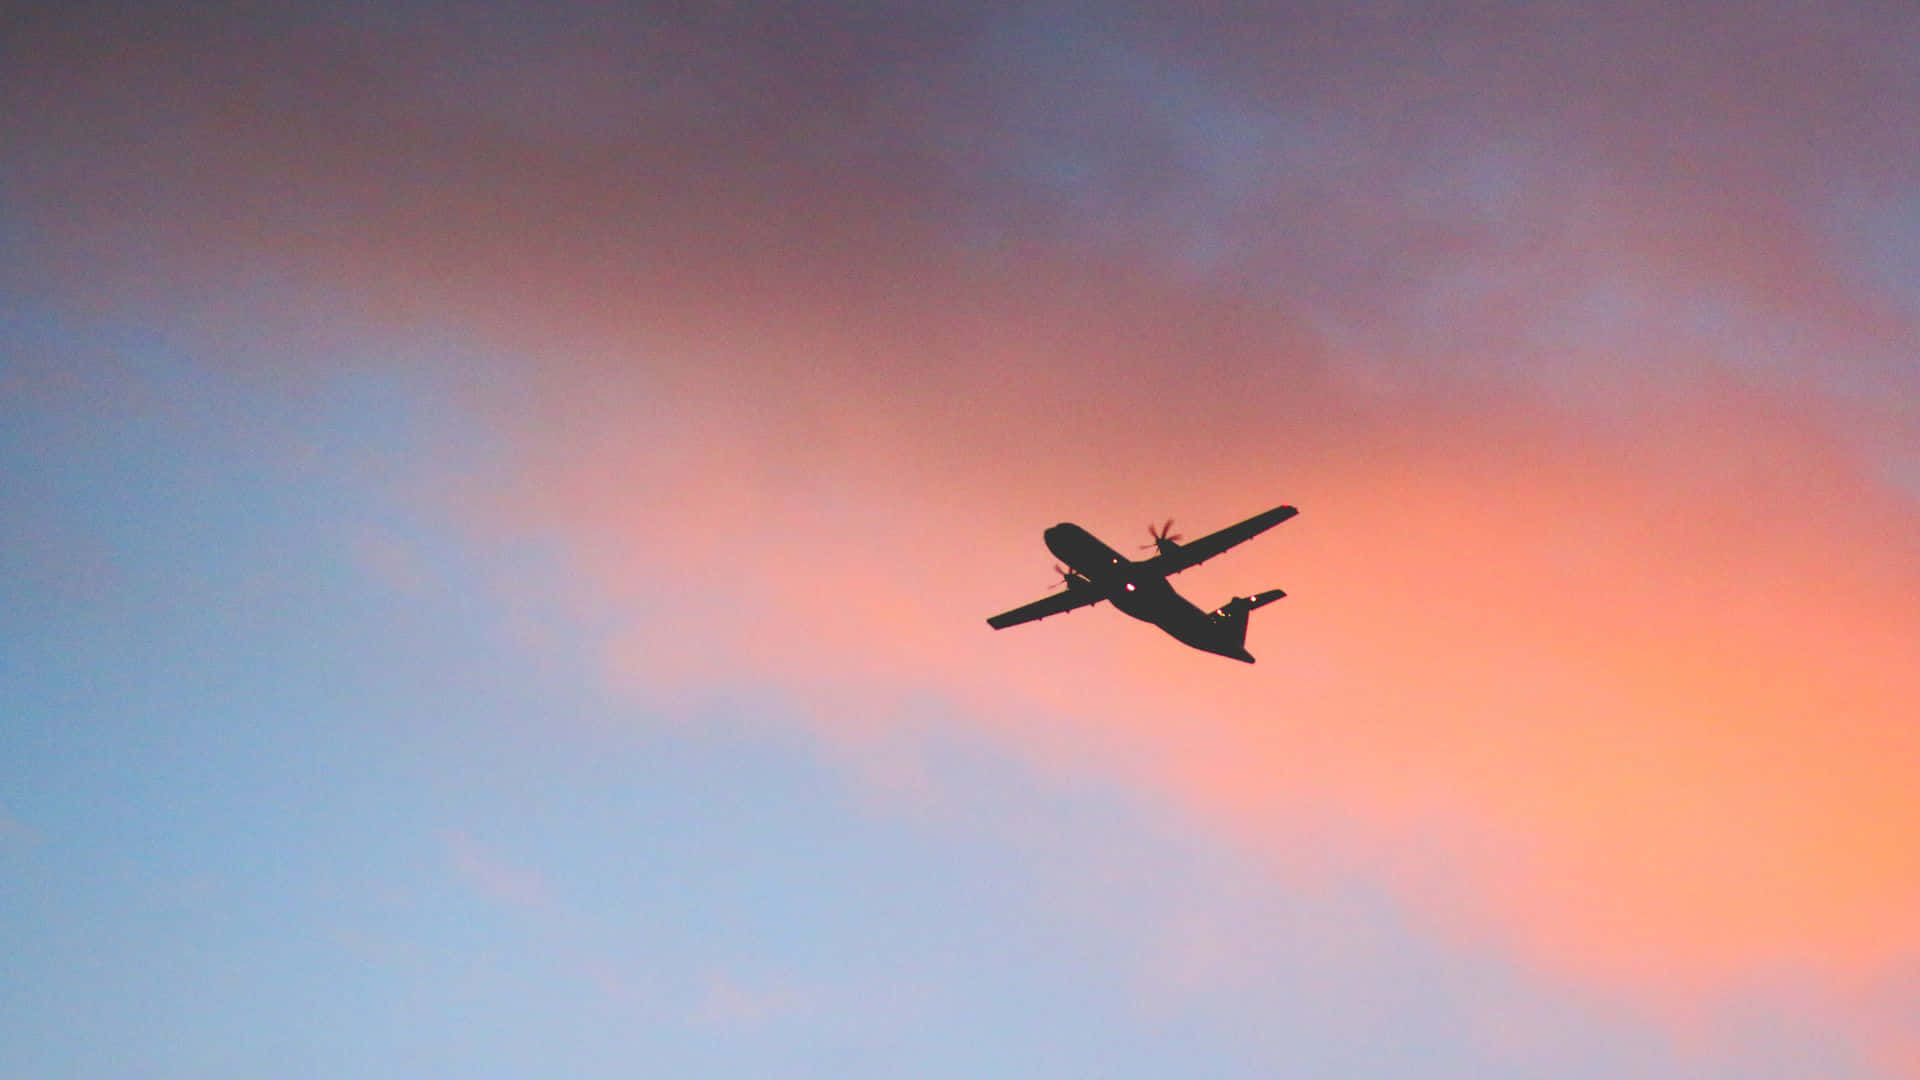 Flugzeugam Himmel Mit Sonnenuntergang Im Hintergrund.